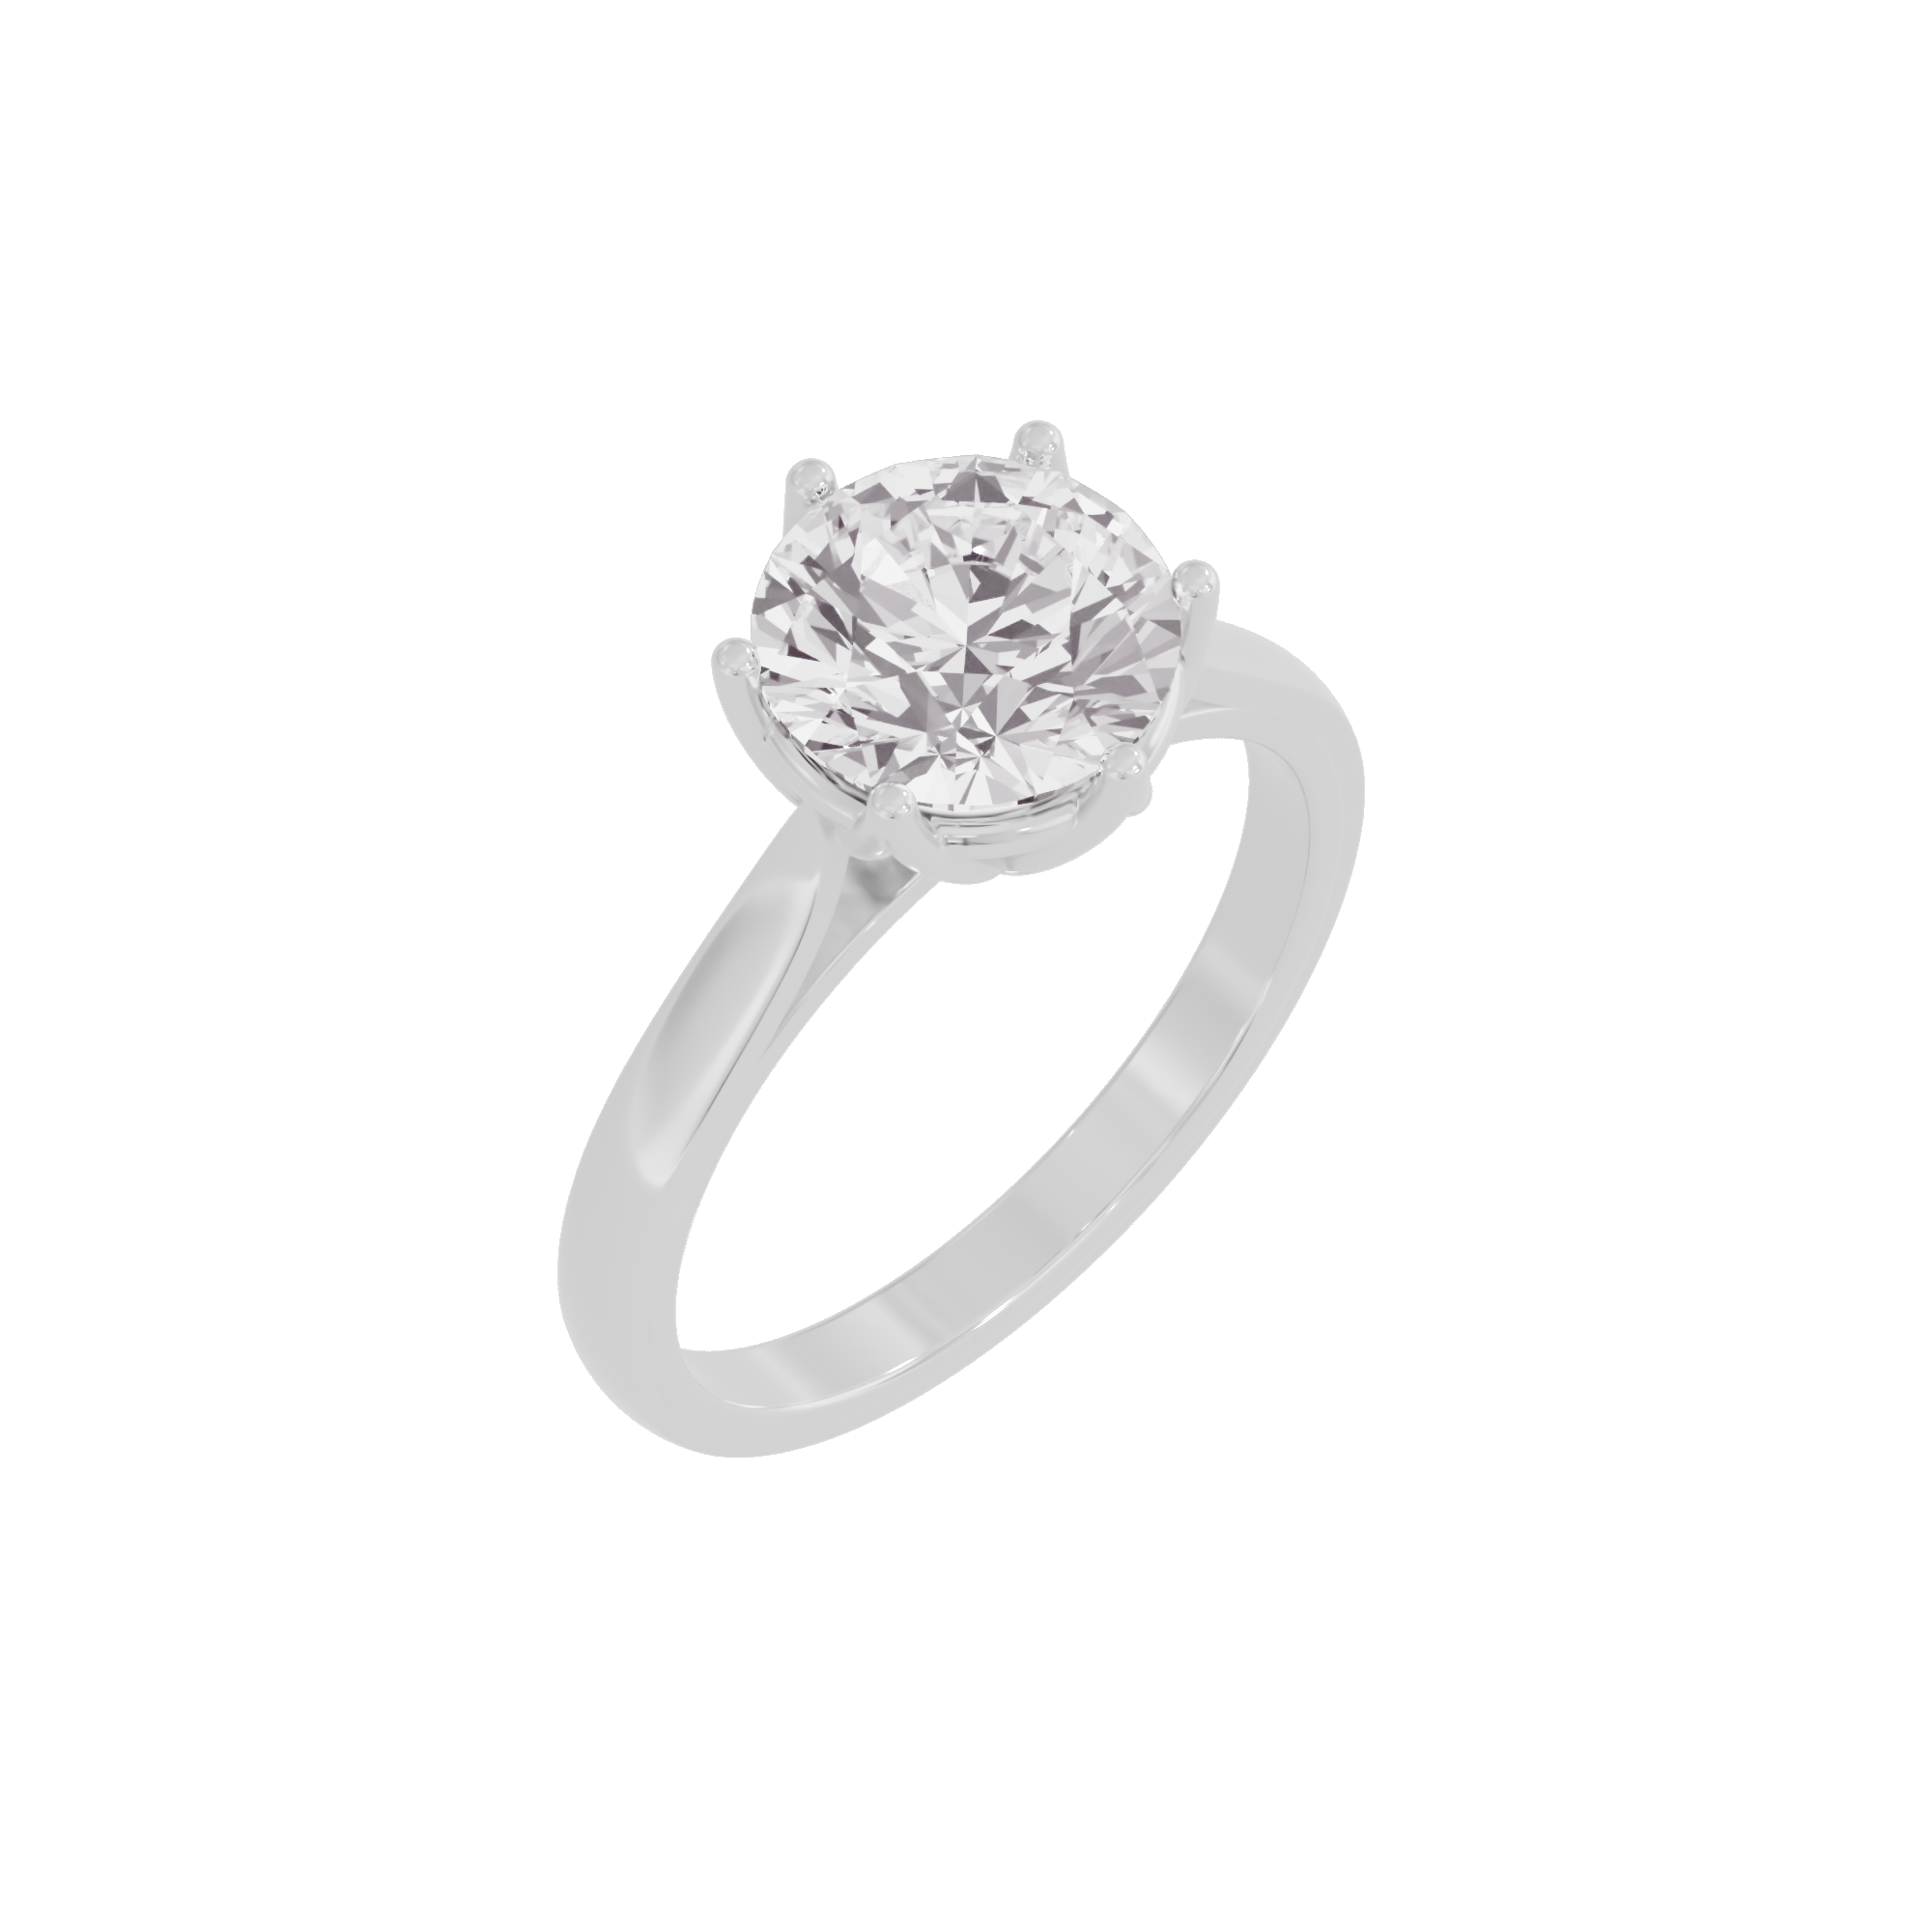 Celestial Harmony Diamond Ring